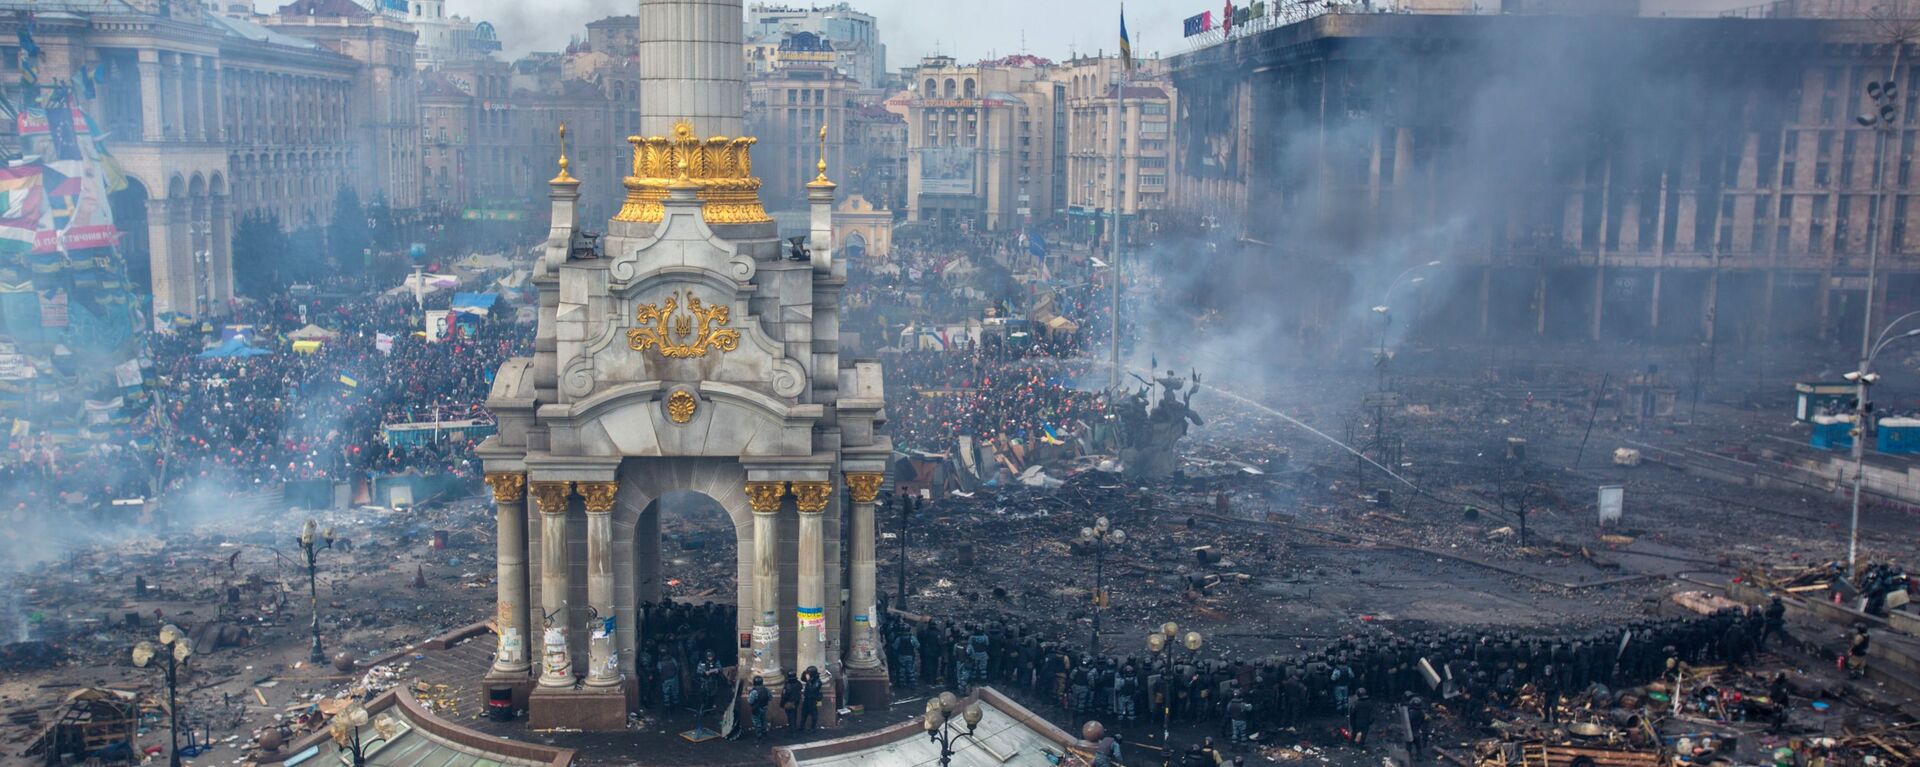 Demonstracije na Trgu nezavisnosti u Kijevu, februar 2014. godine - Sputnik Srbija, 1920, 08.03.2021